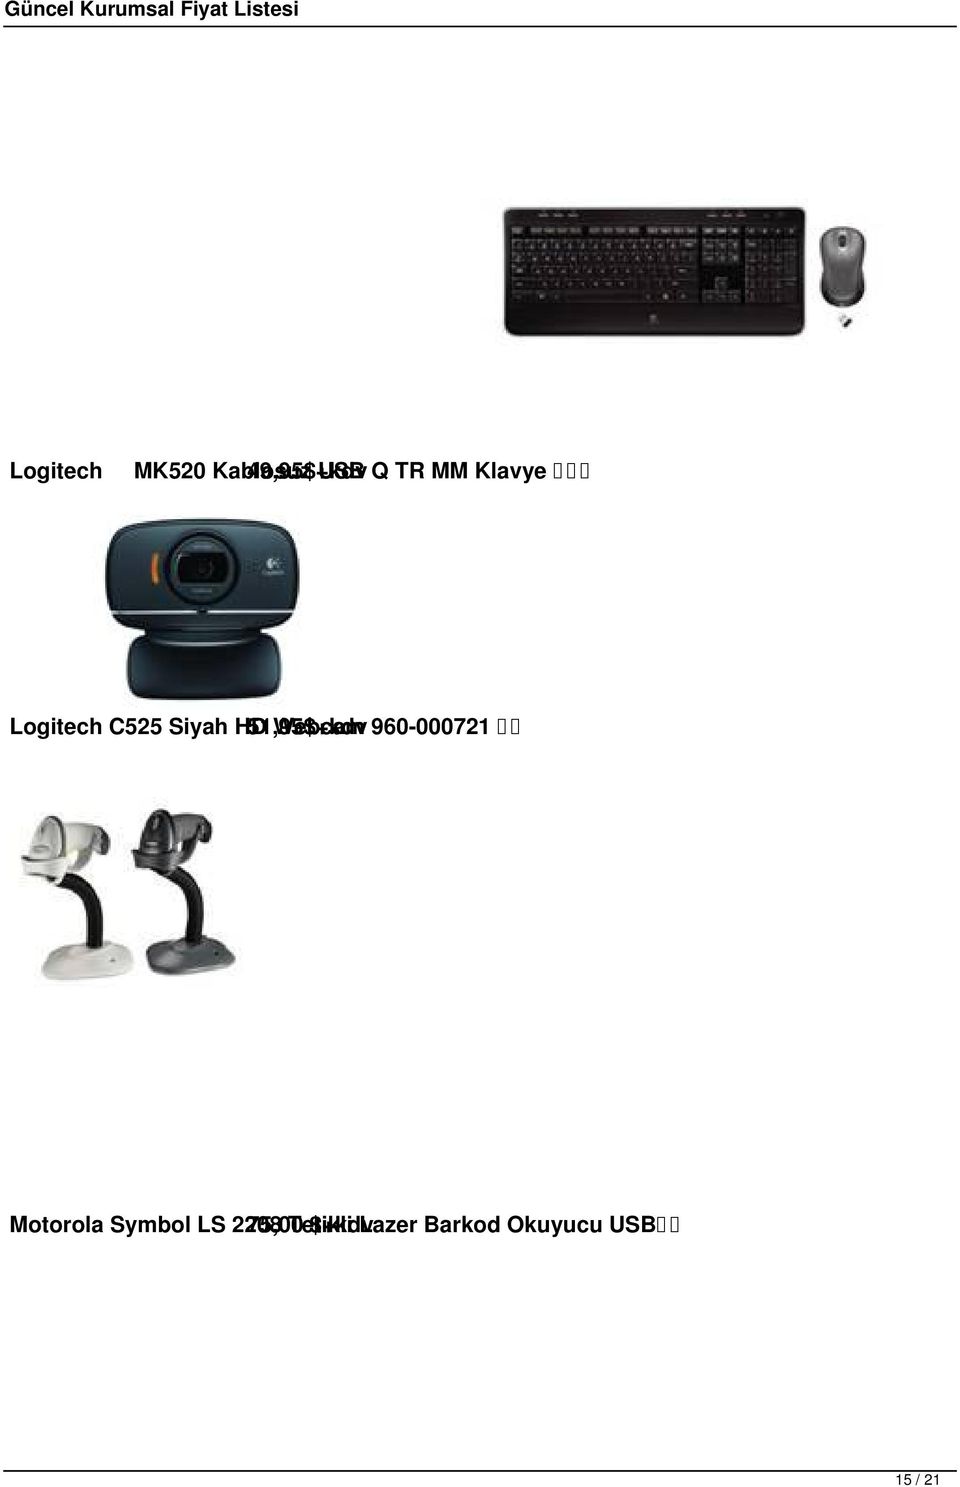 Webcam 960-000721 Motorola Symbol LS 2208